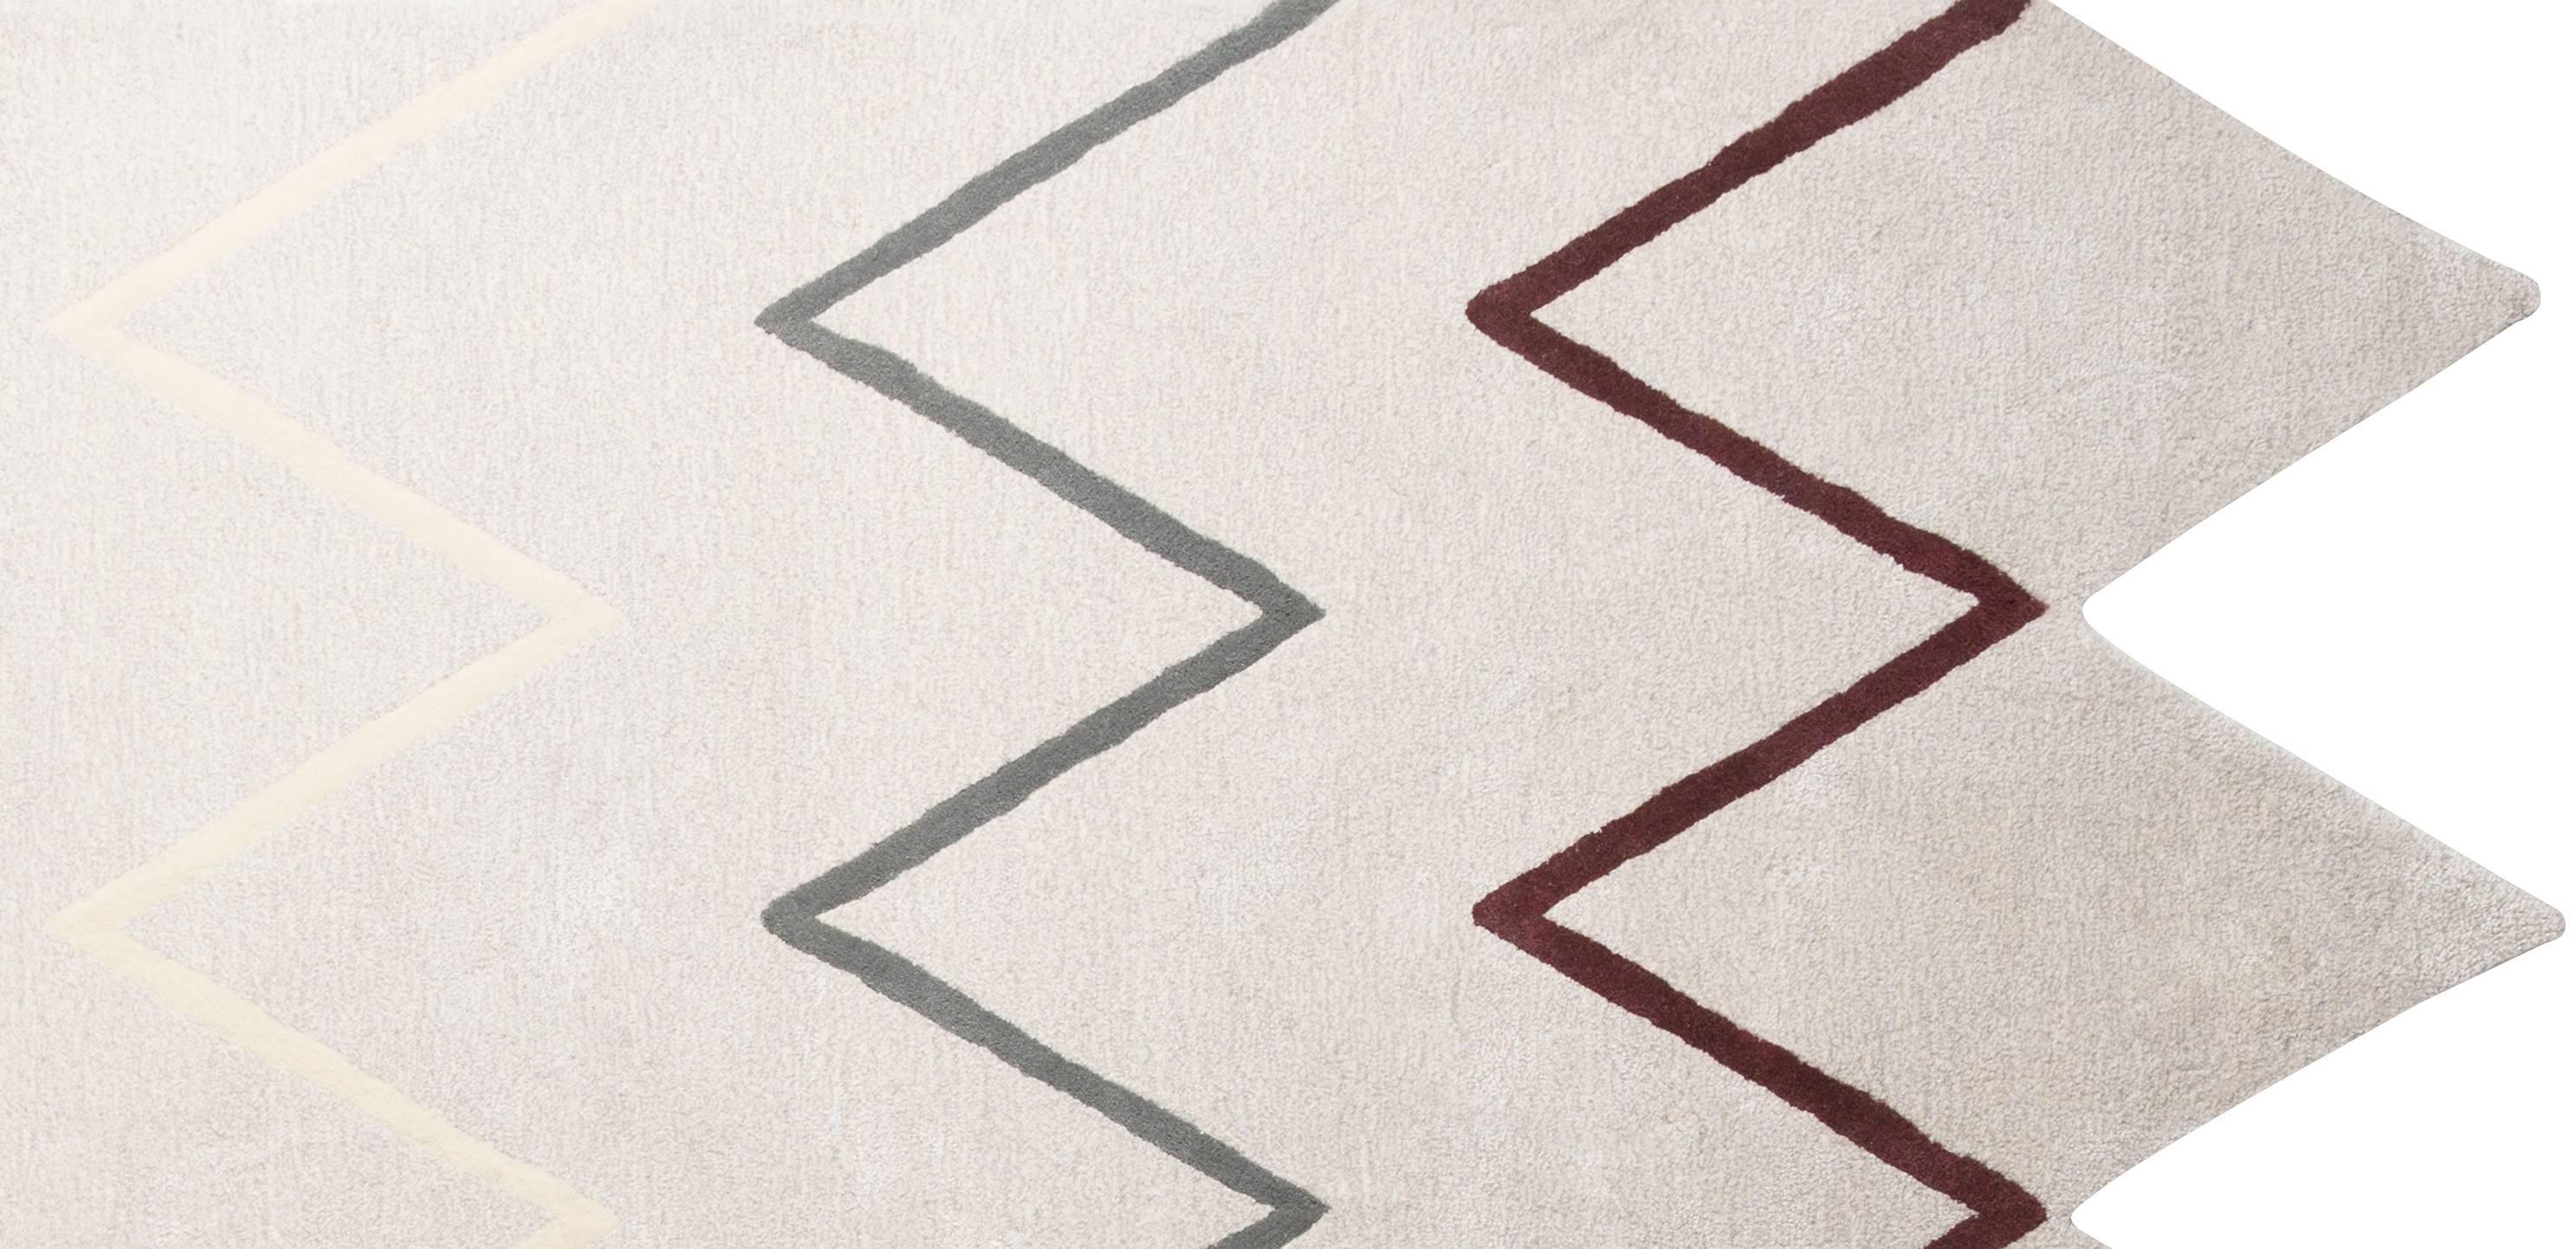 Der Otto-Teppich zeichnet sich durch einen lustigen Zickzack-Rand und einen passenden Druck in einer weichen, neutralen Farbpalette aus. Kein weiterer Nullleiter für die Erdung eines Raumes. Teppiche, die den Raum prägen. Handgetufteter Teppich aus